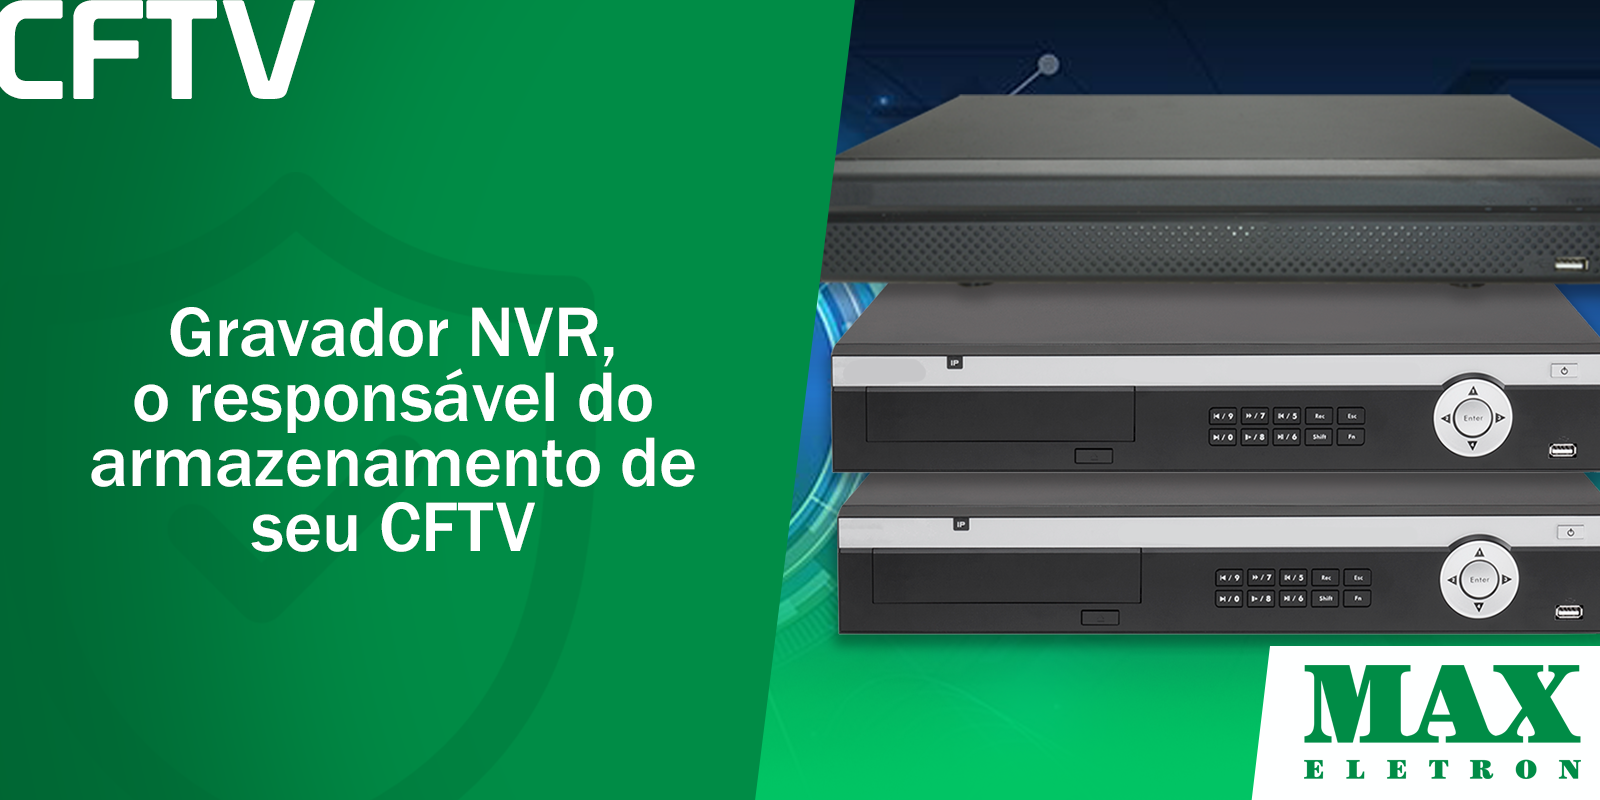 Gravador NVR, o responsável do armazenamento de seu CFTV